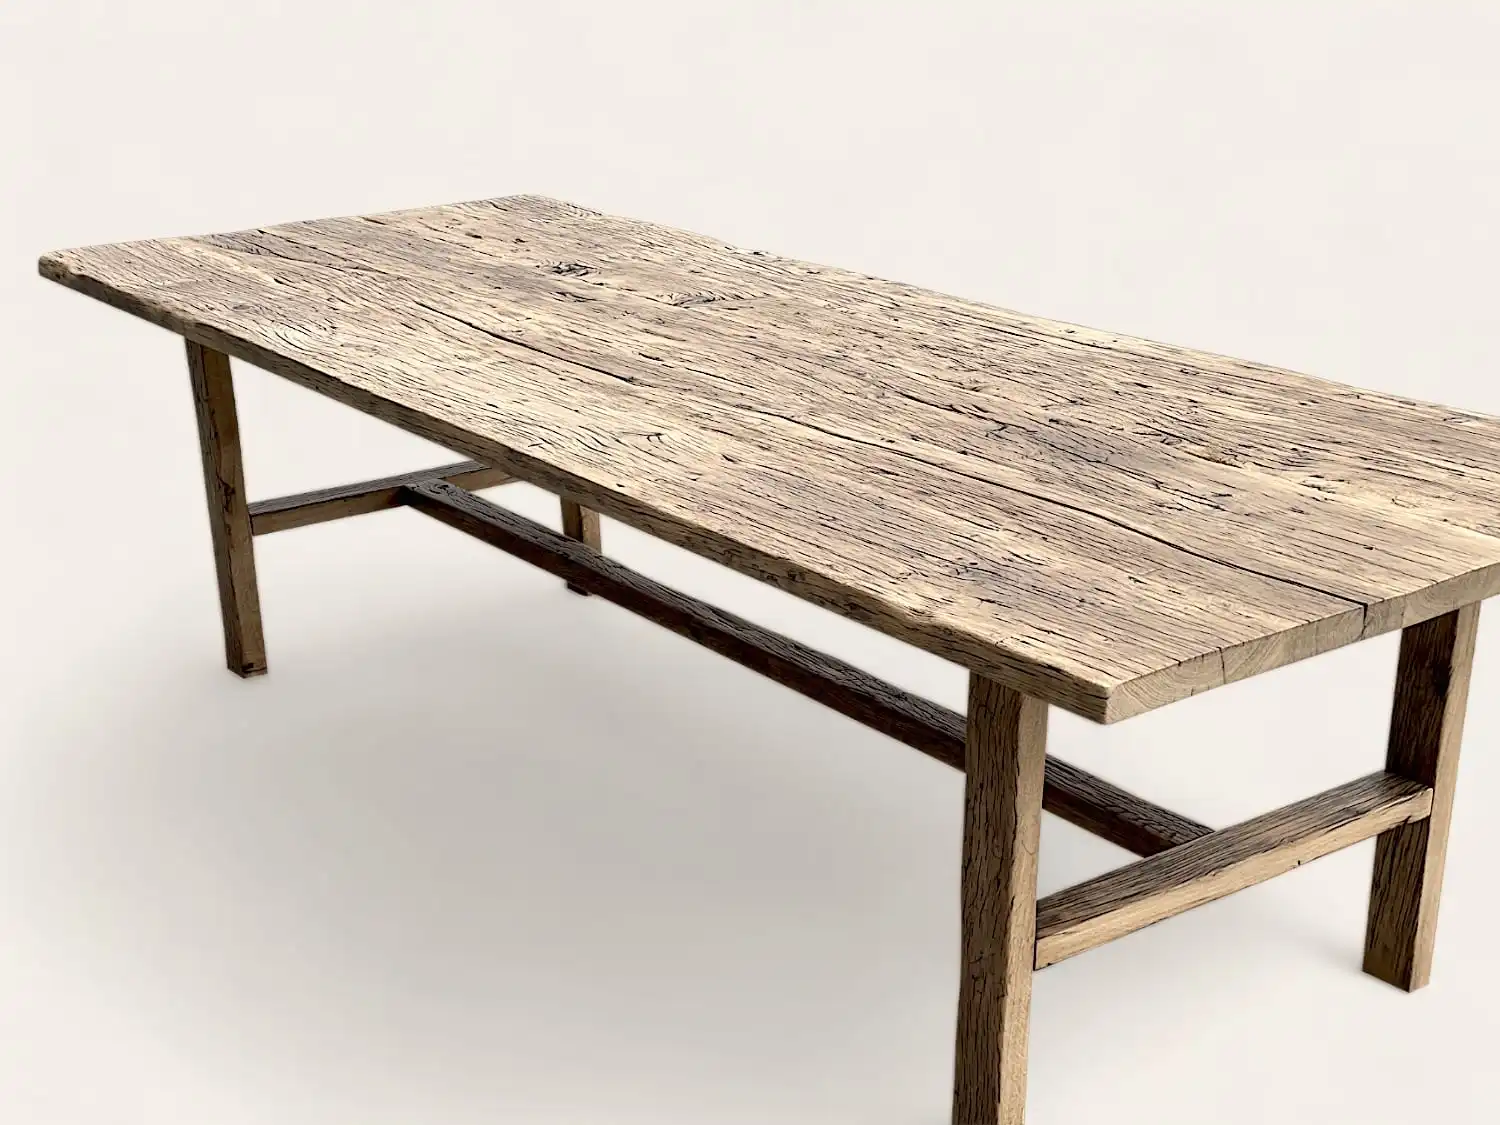 Une longue table rustique en bois Chene massif avec une surface rugueuse et texturée et des pieds robustes sur un fond uni.